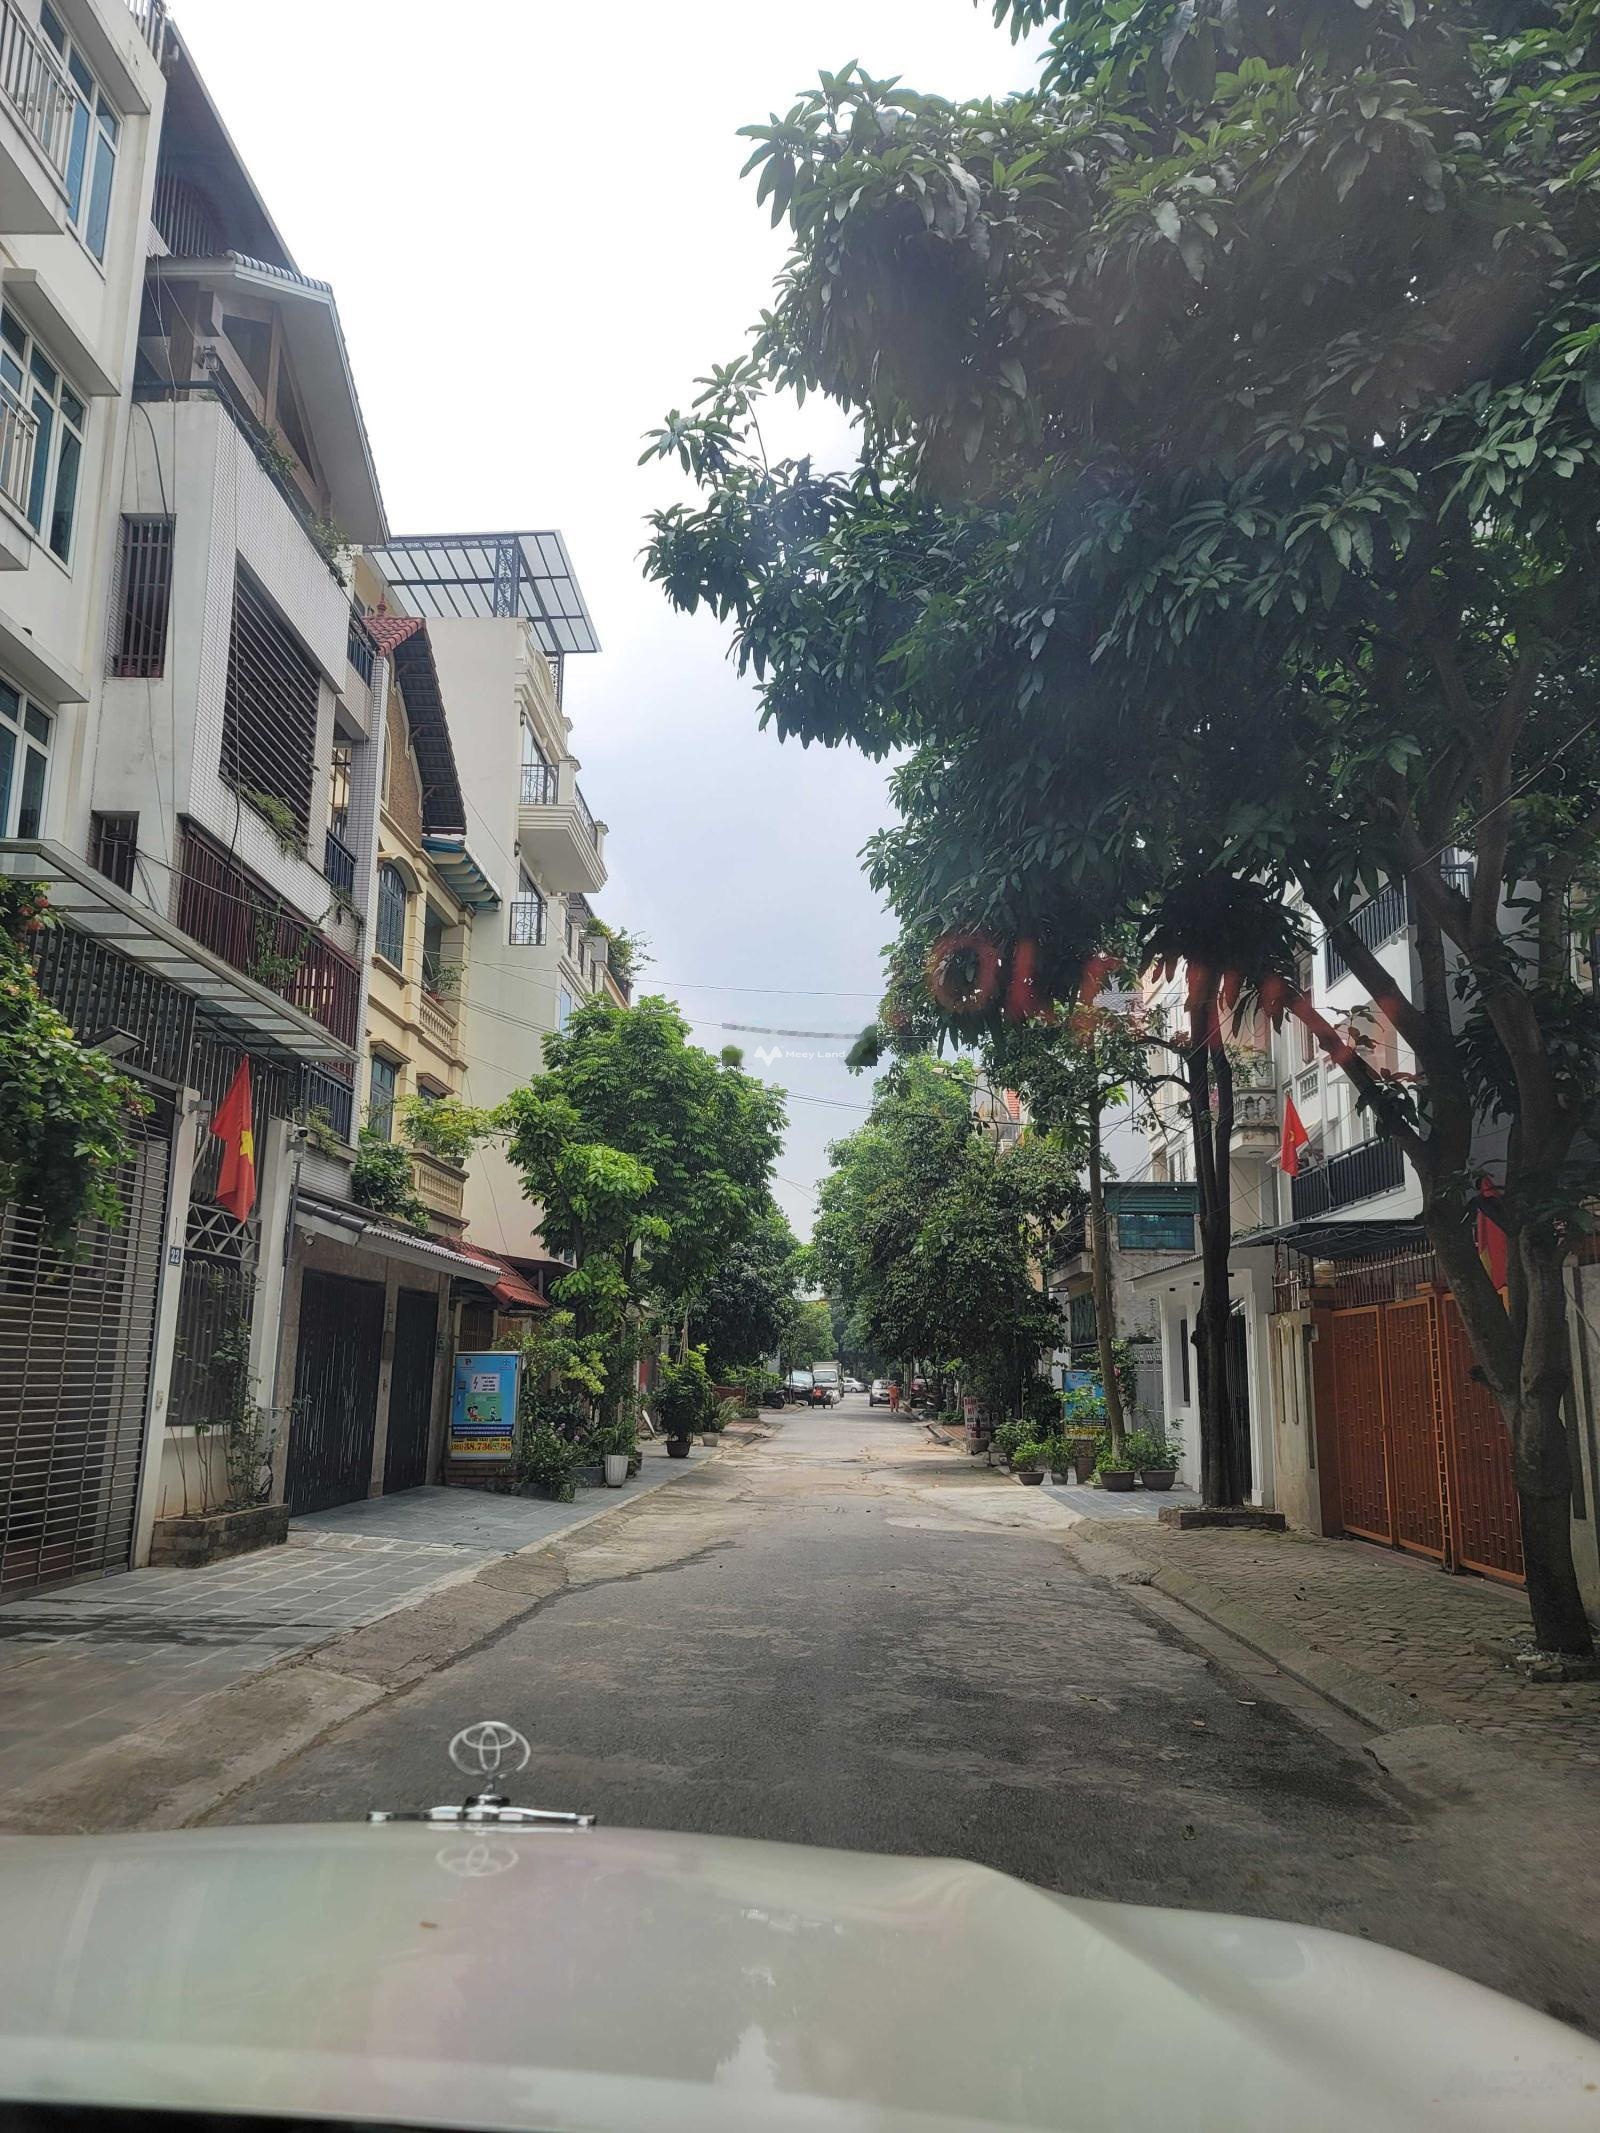 Bán nhà mặt phố xây 4 tầng rưỡi, diện tích 96m2, mặt tiền 6m tại Nguyễn Đức Thuận, Long Biên, Hà Nội